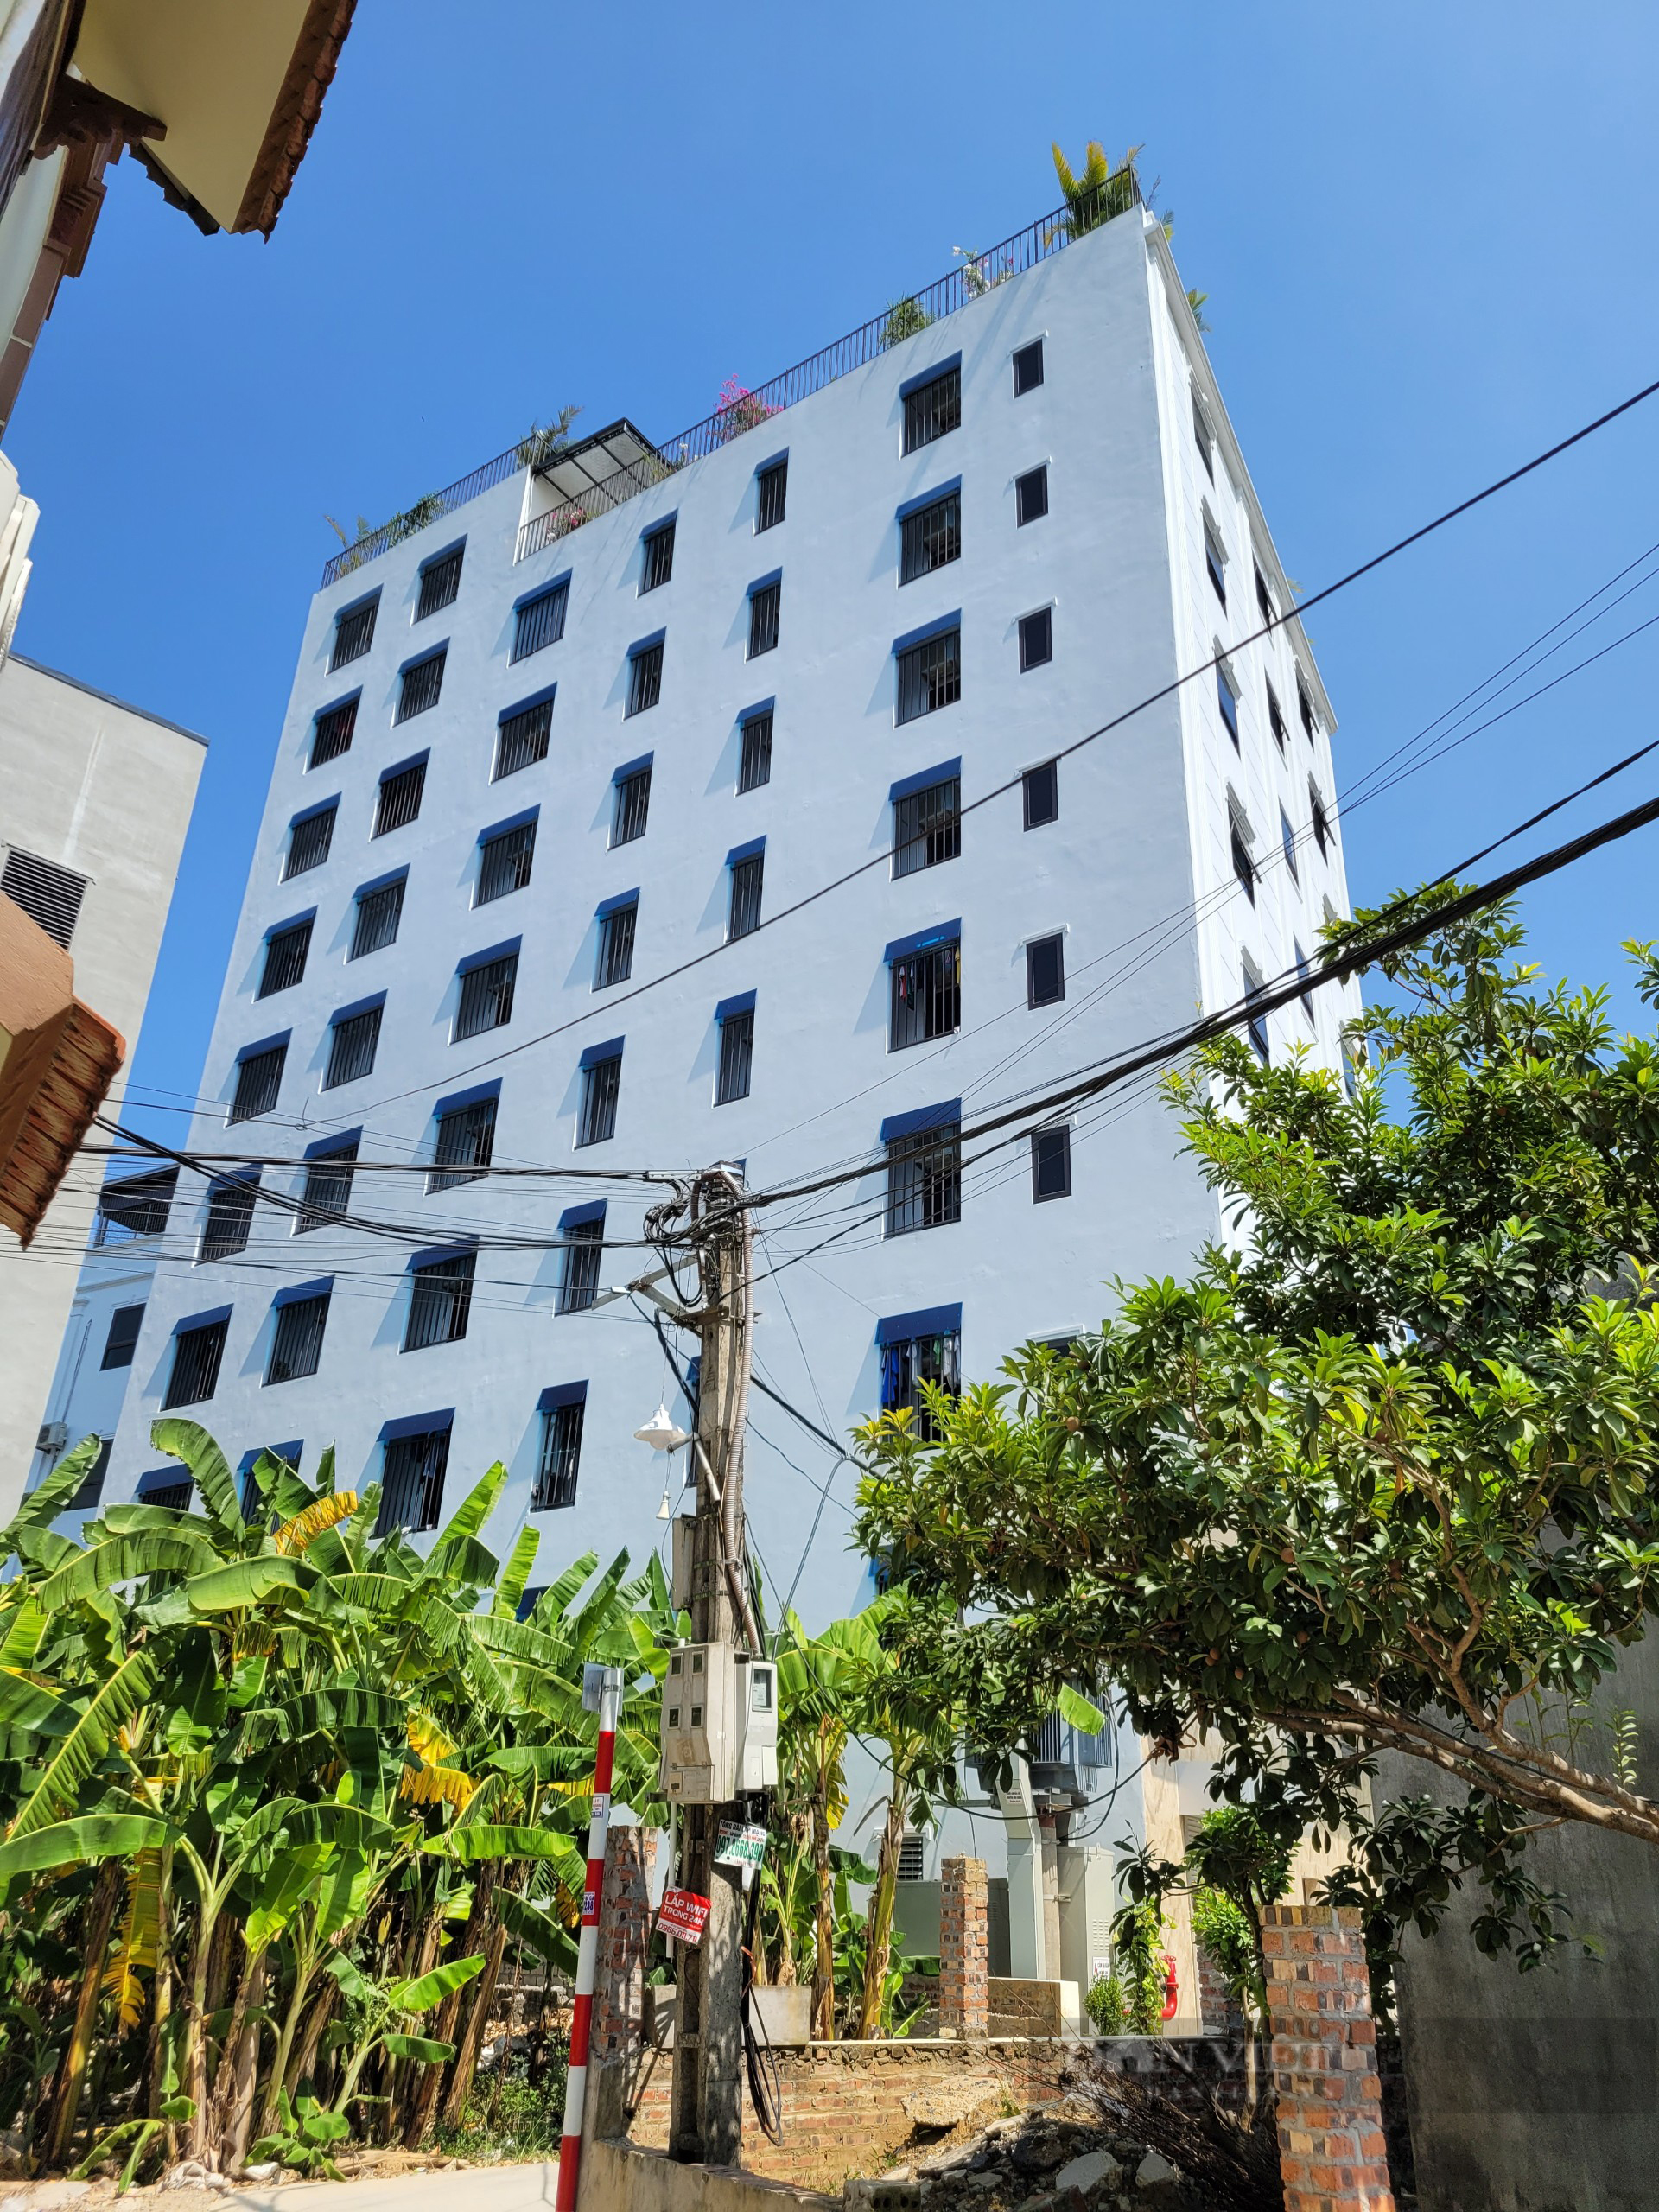 Hàng loạt chung cư mini bề thế cùng khu với công trình xây vượt 5 tầng, gần 200 căn hộ ở Thạch Thất - Ảnh 9.